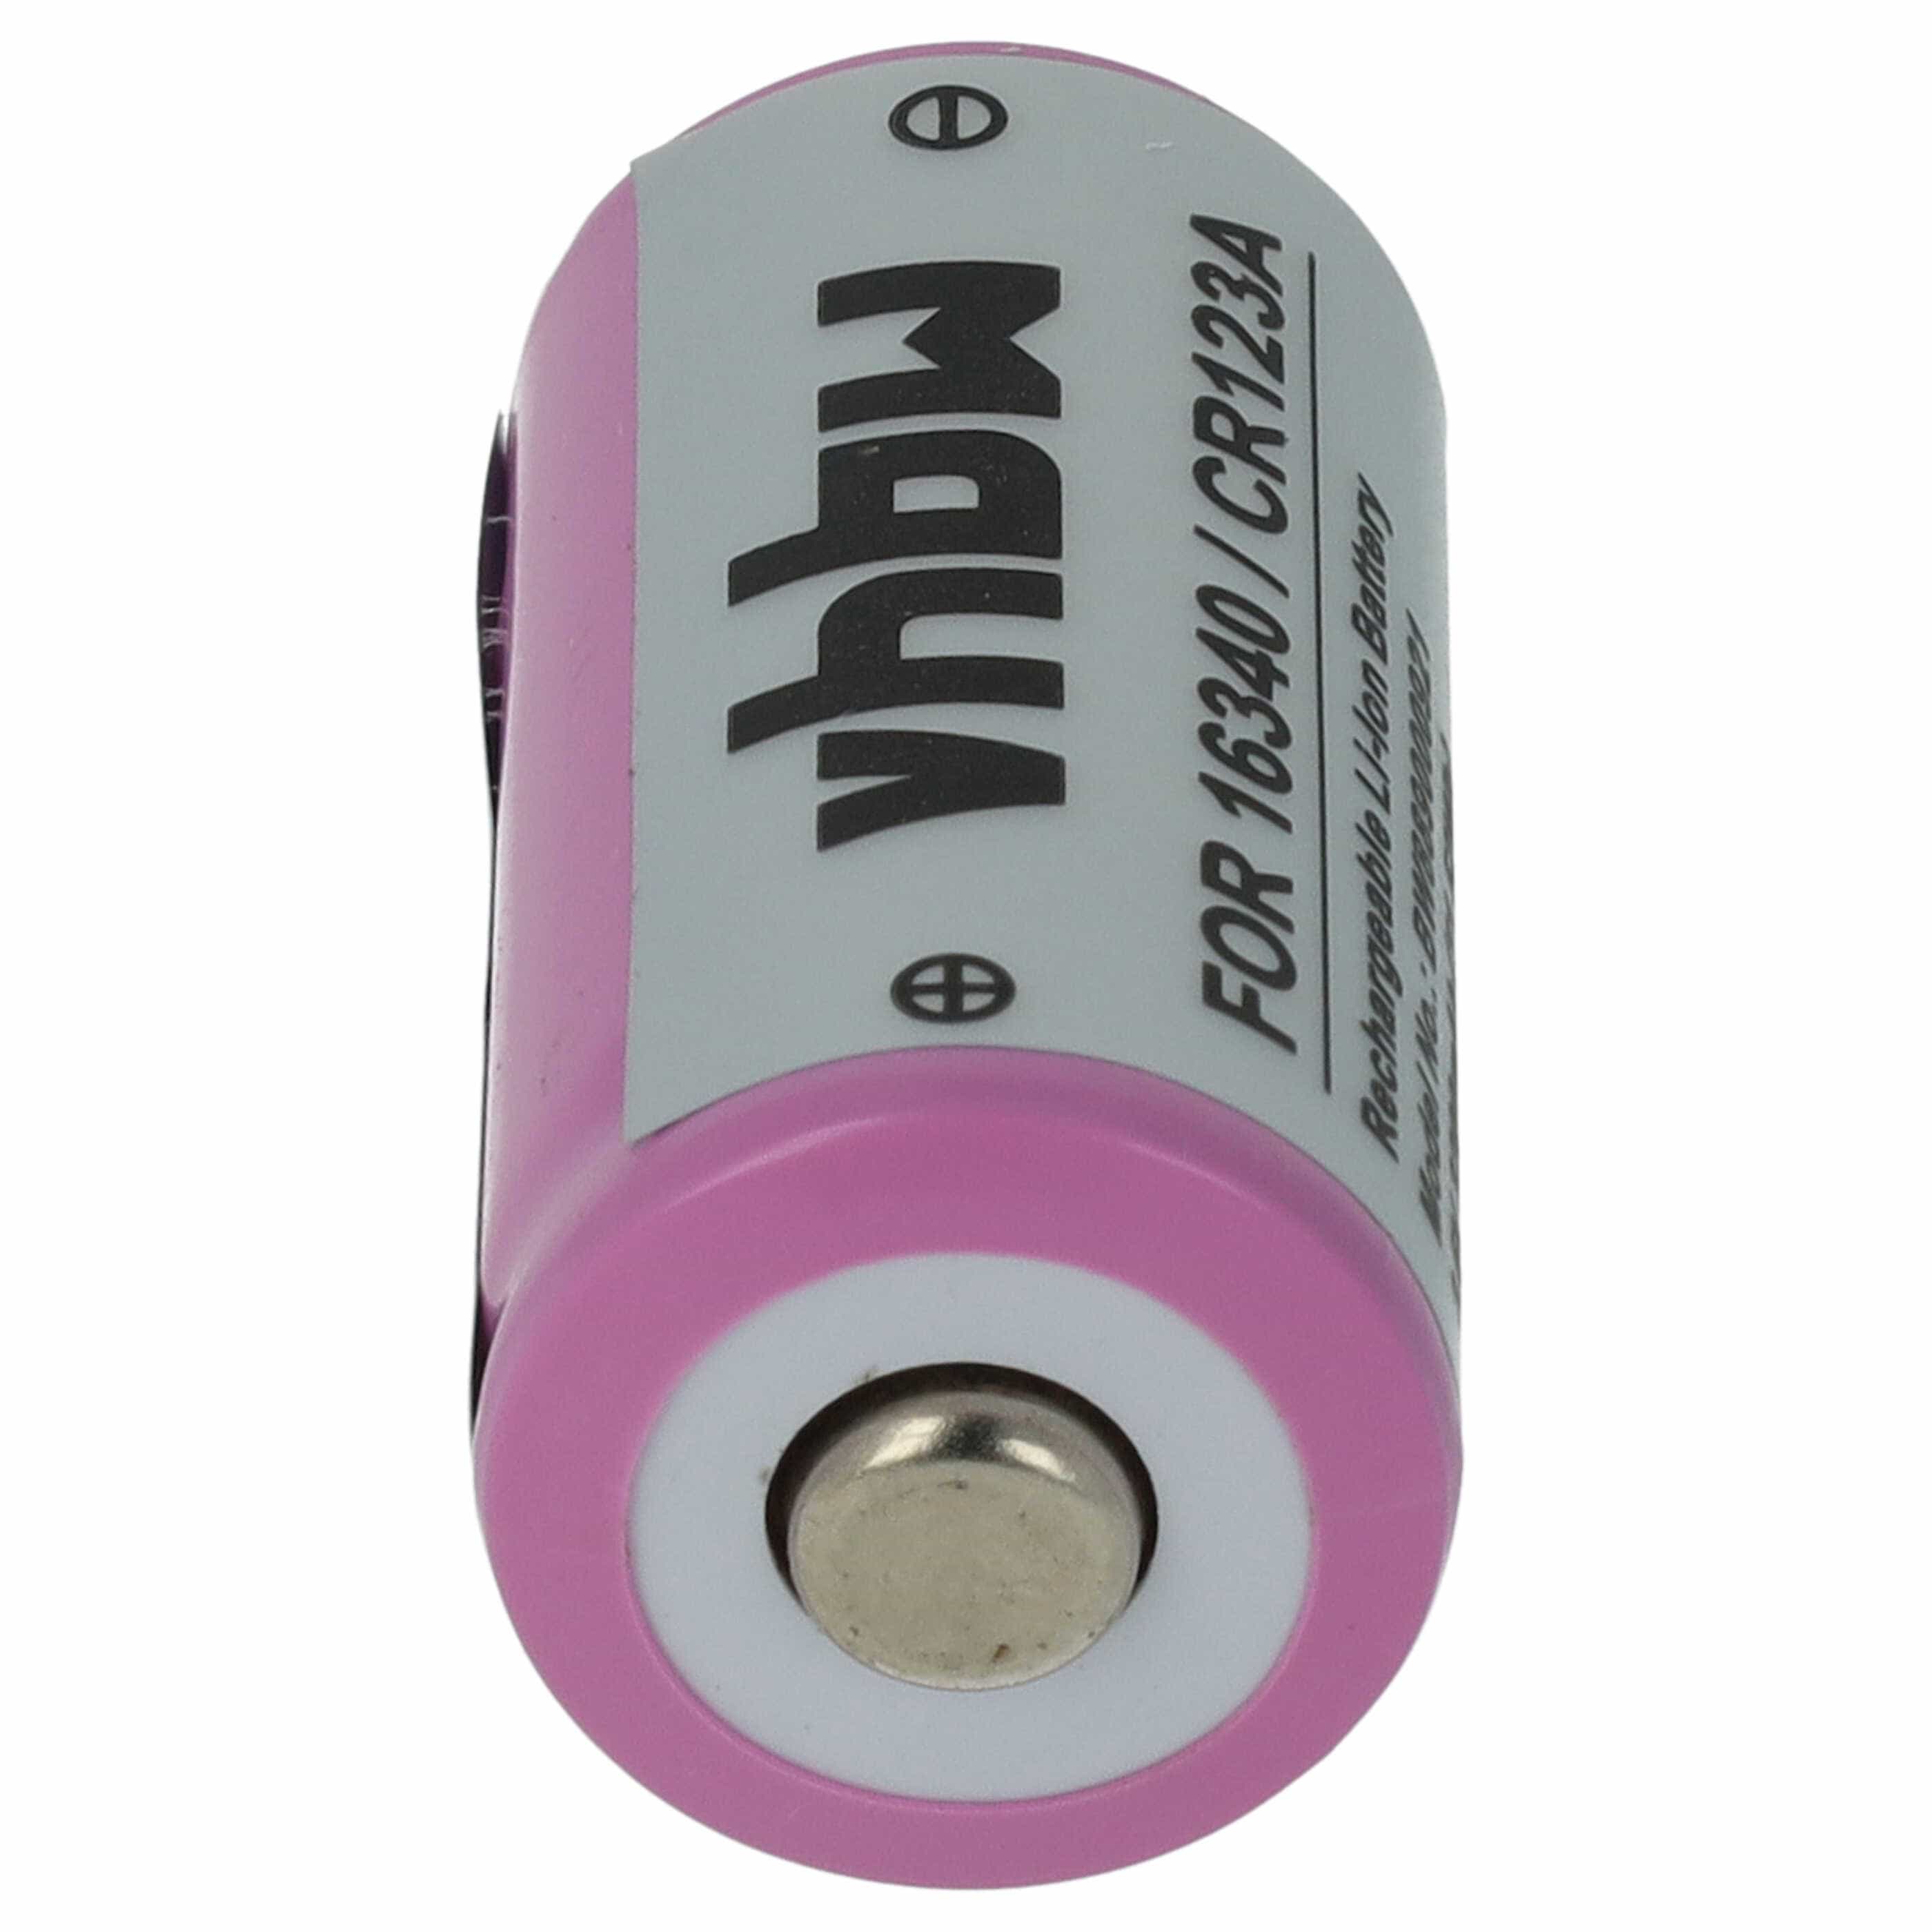 Batterie remplace 16340, CR123R, CR17335, CR17345, CR123A universelle - 800mAh 3,6V Li-ion, 1x cellules